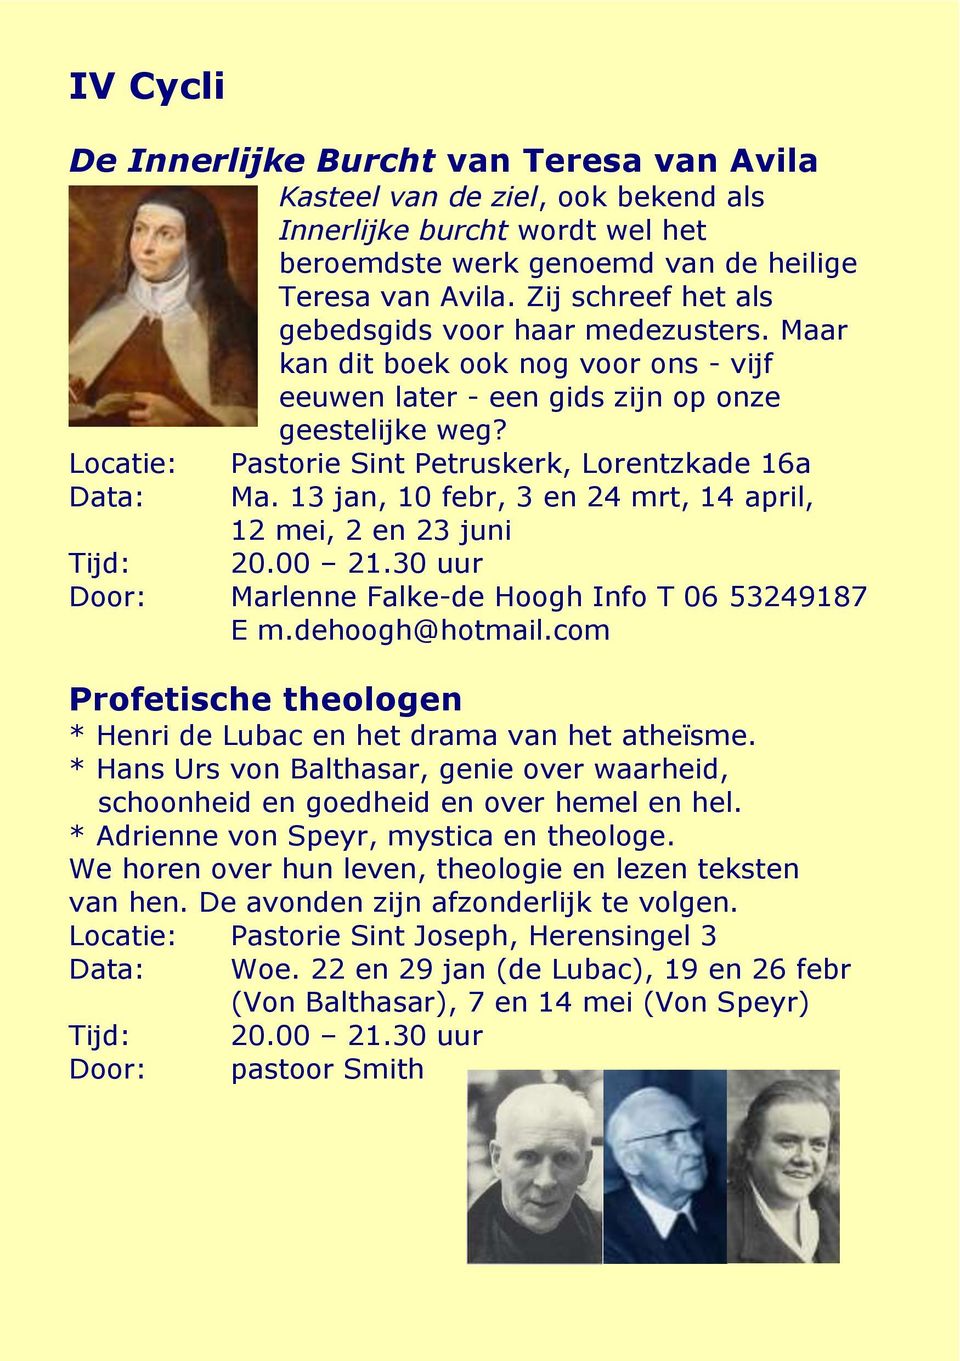 Locatie: Pastorie Sint Petruskerk, Lorentzkade 16a Data: Ma. 13 jan, 10 febr, 3 en 24 mrt, 14 april, 12 mei, 2 en 23 juni Door: Marlenne Falke-de Hoogh Info T 06 53249187 E m.dehoogh@hotmail.